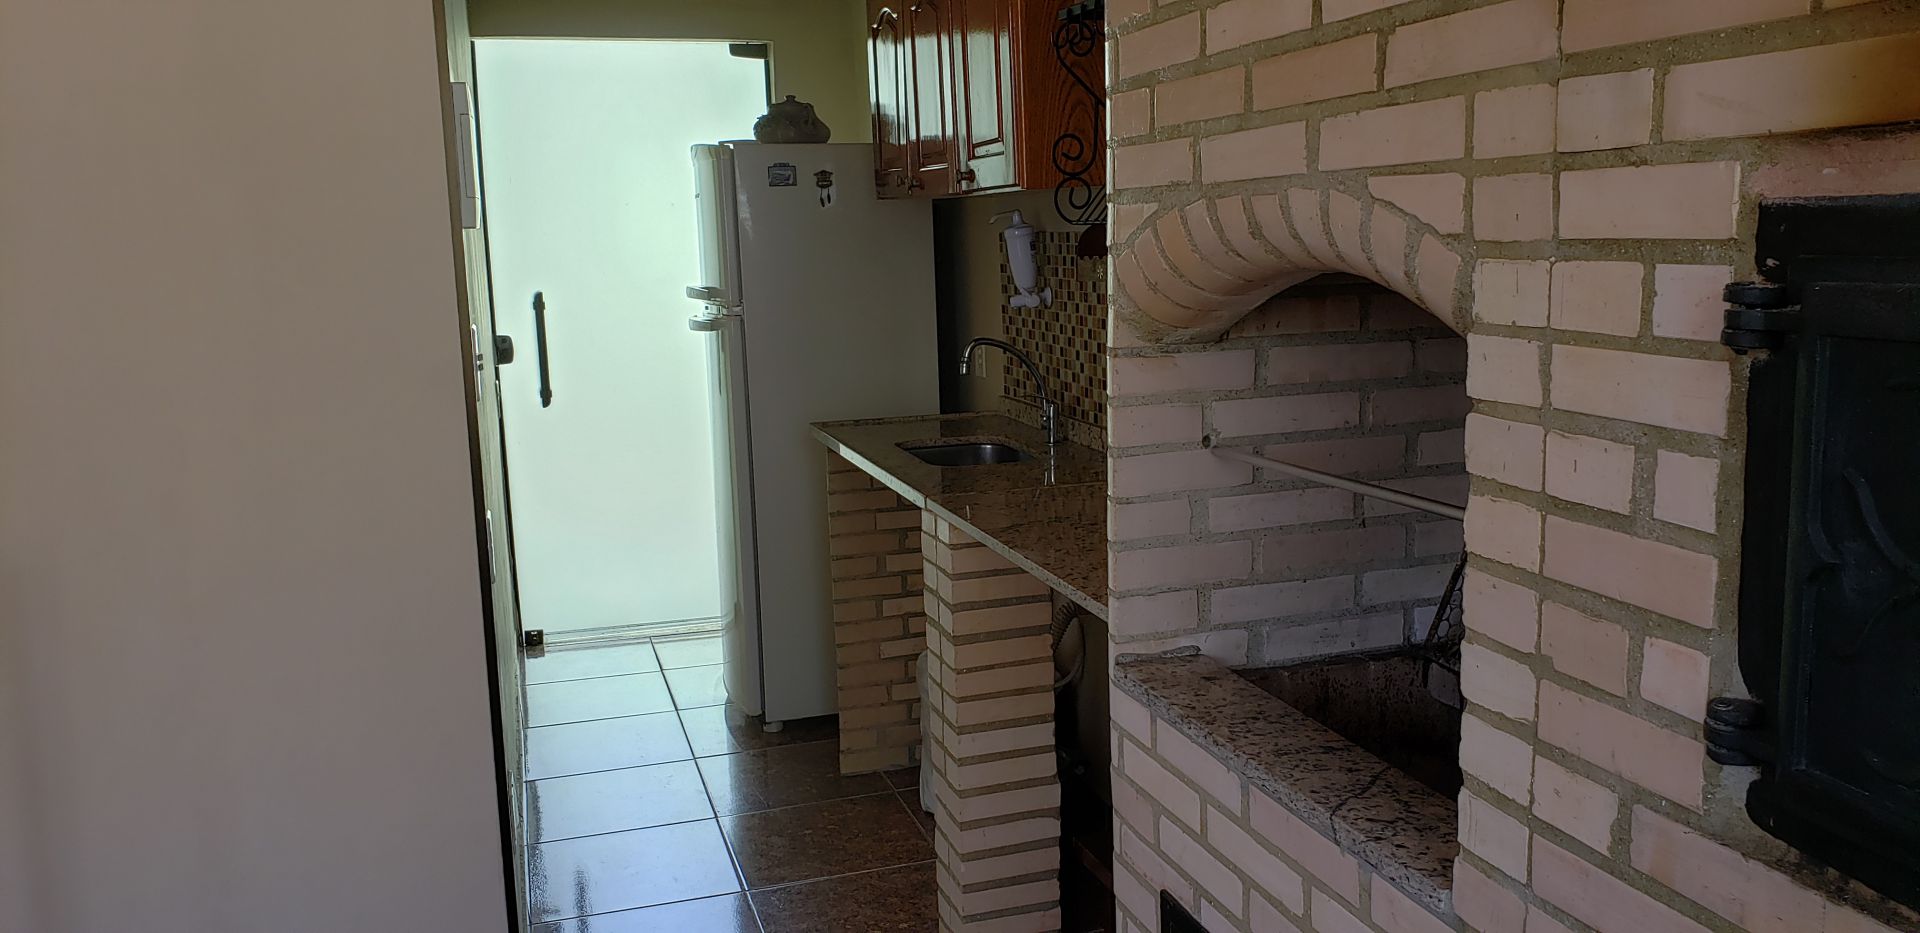 FOTO 6 - Casa 3 quartos à venda Vila Valqueire, Rio de Janeiro - R$ 860.000 - RF268 - 7